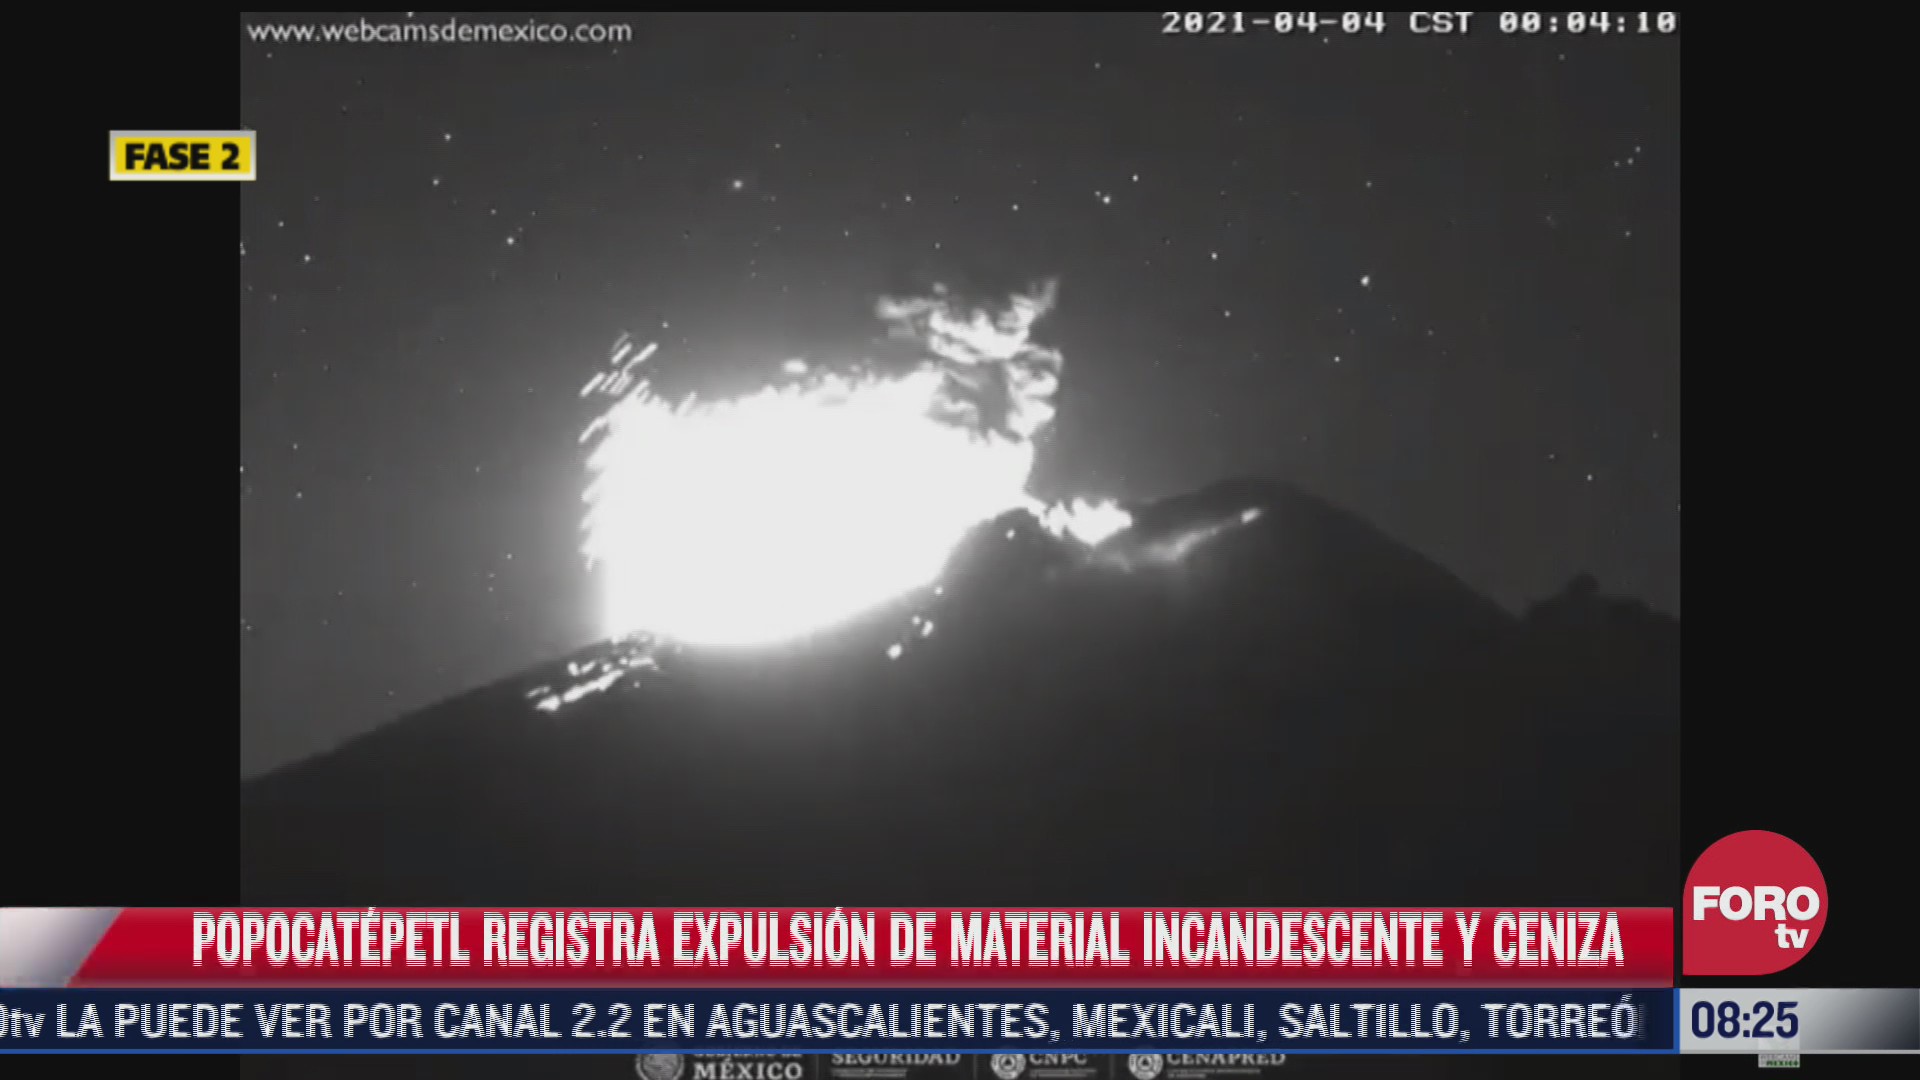 volcan popocatepetl registra explosion con expulsion de material incandescente